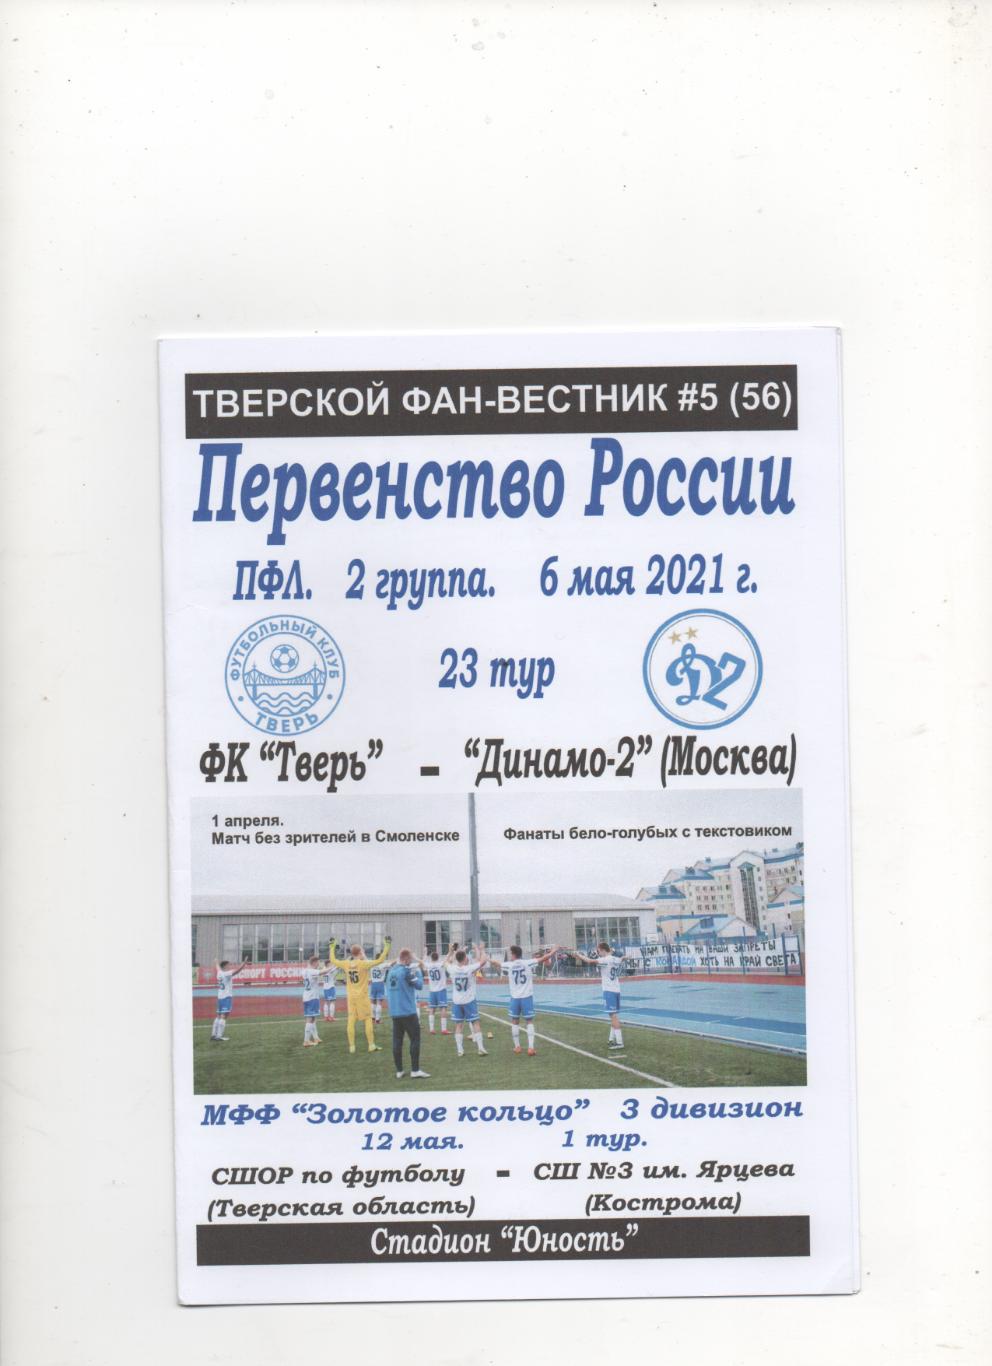 ФК Тверь - Динамо-2 (Москва) - 2020/21.ТФВ № 5 (56).